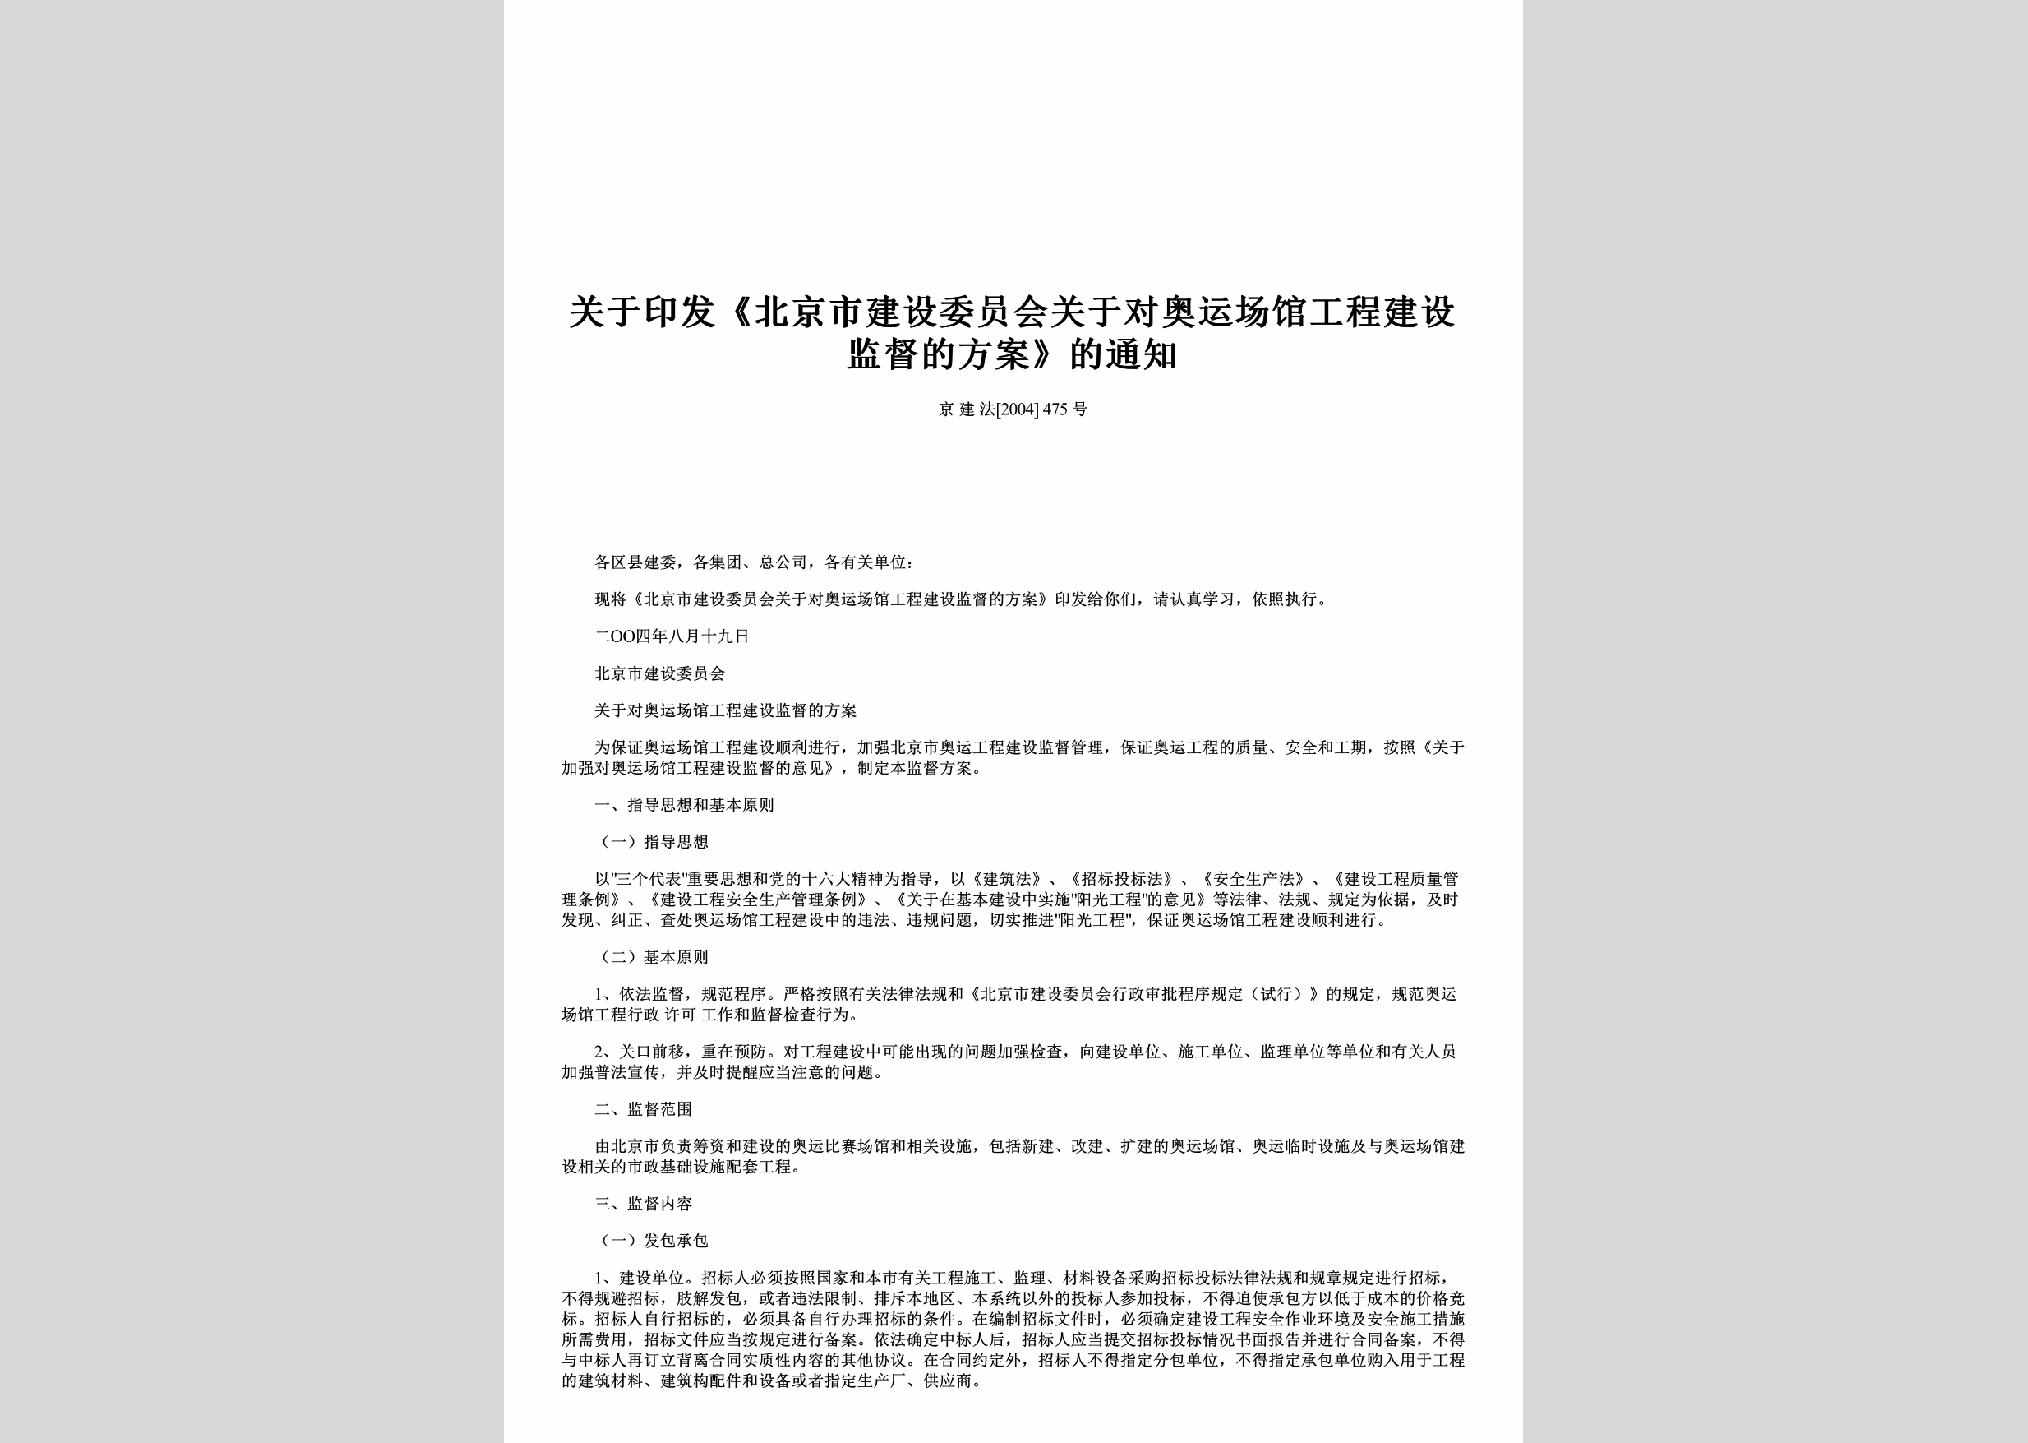 京建法[2004]475号：关于印发《北京市建设委员会关于对奥运场馆工程建设监督的方案》的通知